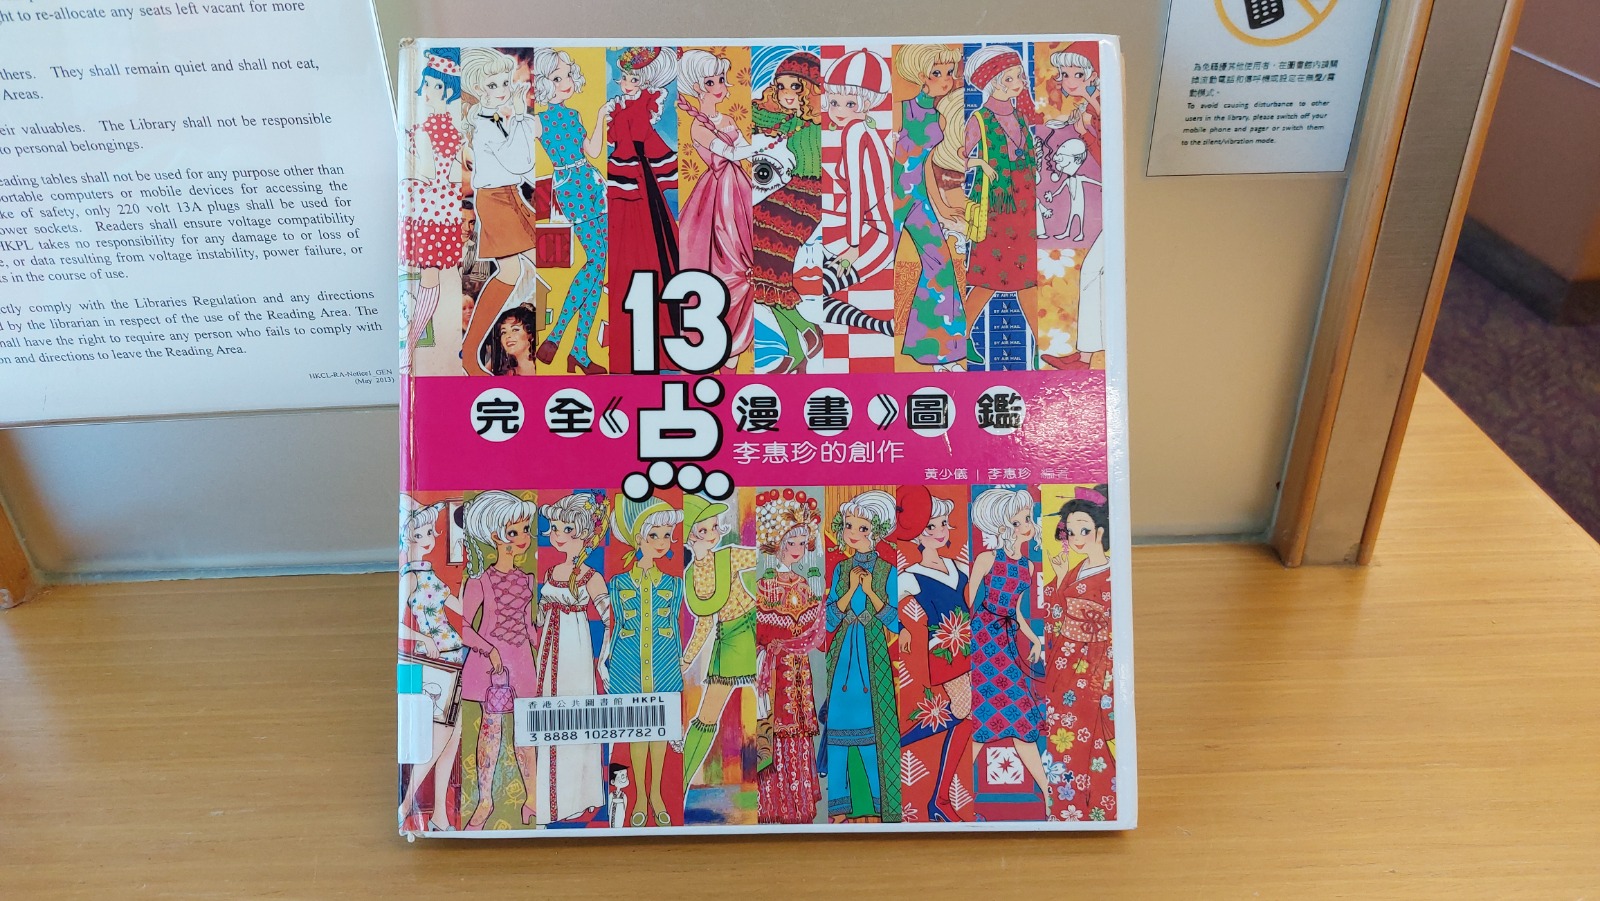 2003年吳興記書報社出版了《完全13点漫畫》圖鑒。